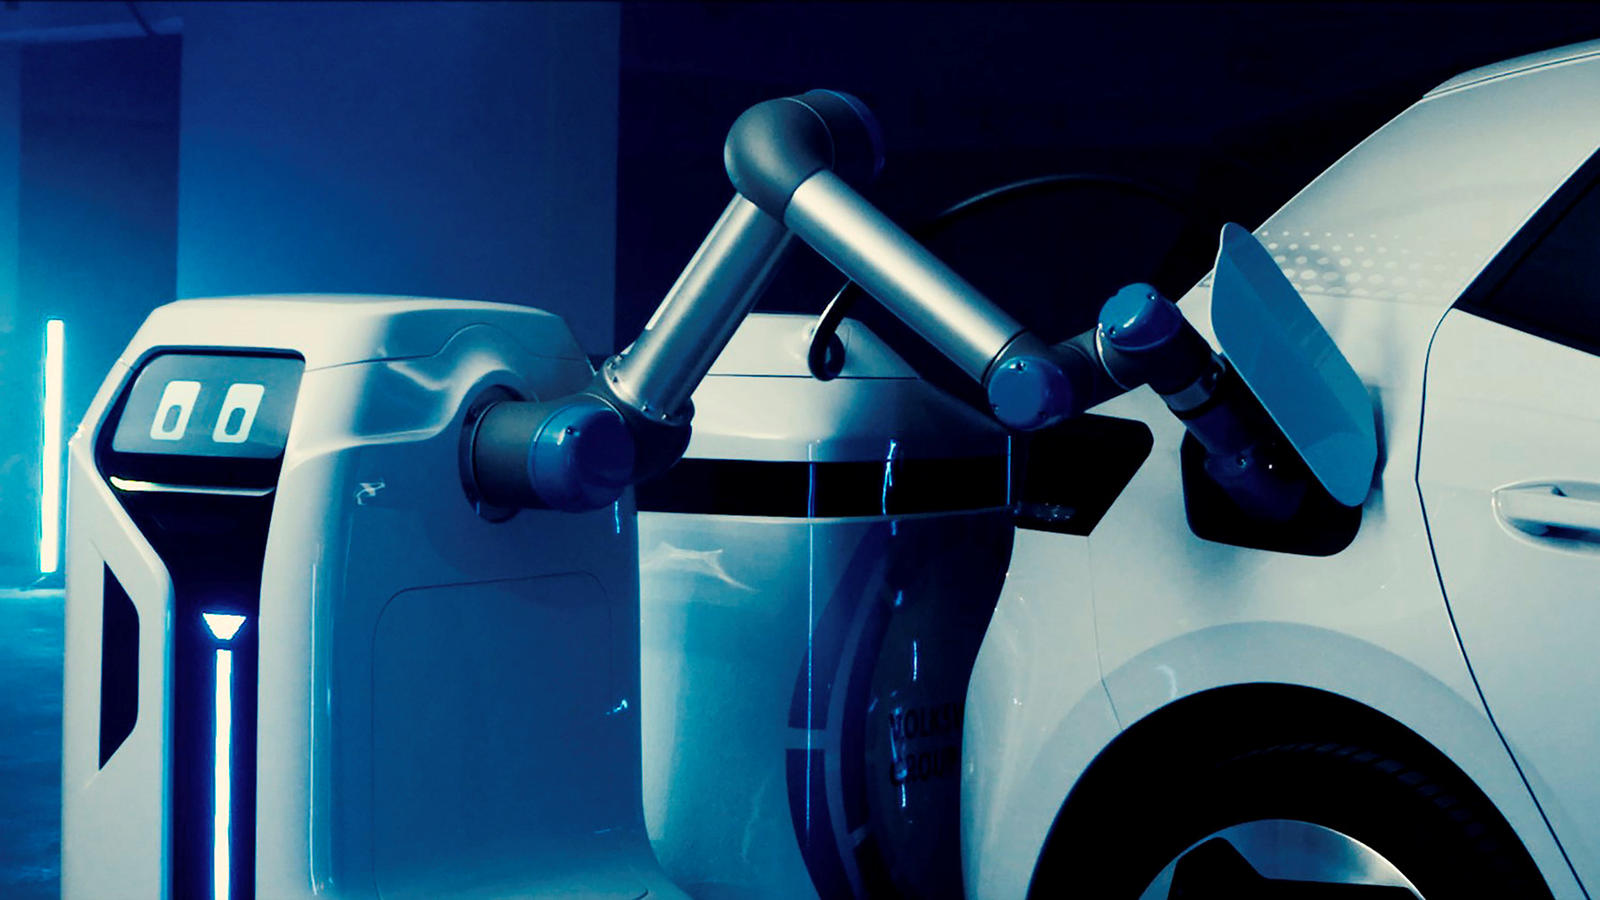 Электромобили продолжают совершенствоваться благодаря более низким ценам, большему запасу хода и более короткому времени зарядки, но автопроизводители все еще должны улучшить процесс зарядки, чтобы убедить людей покупать электро-кары. Volkswagen Grou